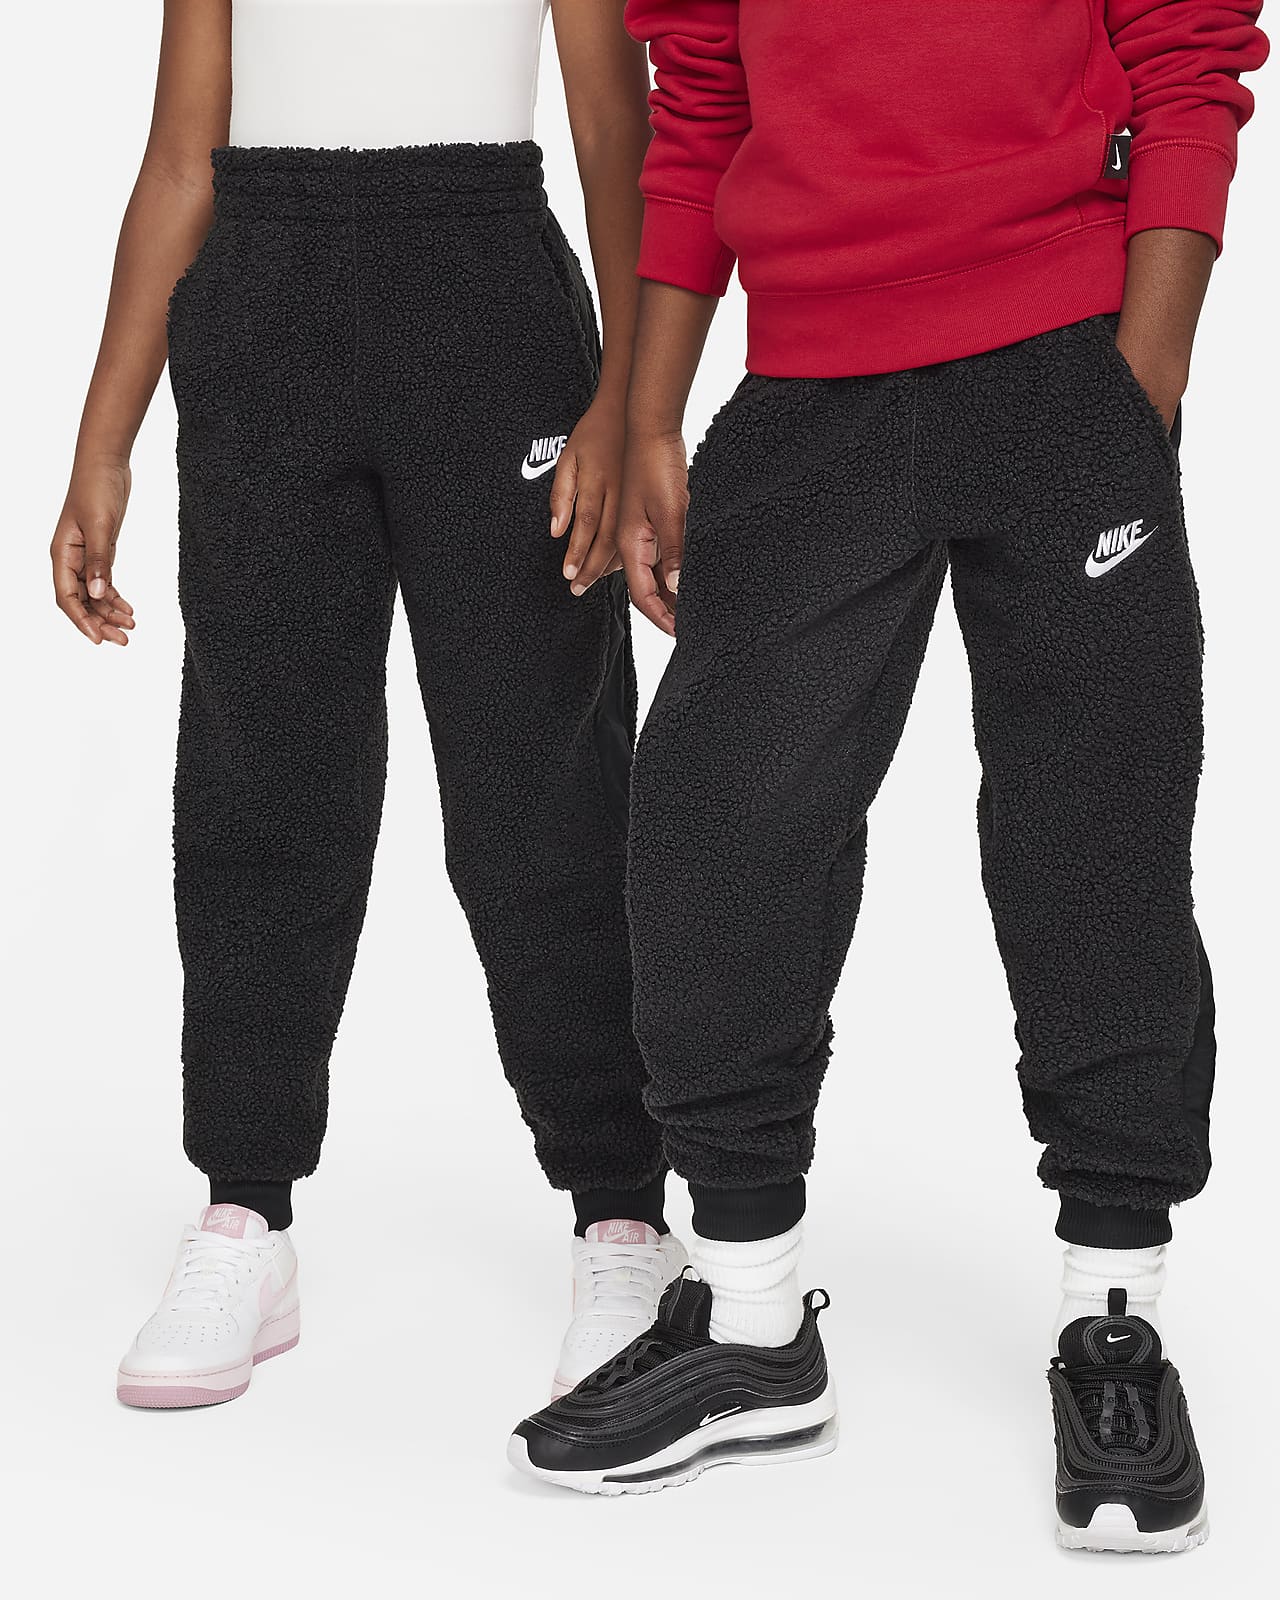 Nike Sportswear Club Fleece Joggers Mens Bottoms Grey Multi Size Track Pants